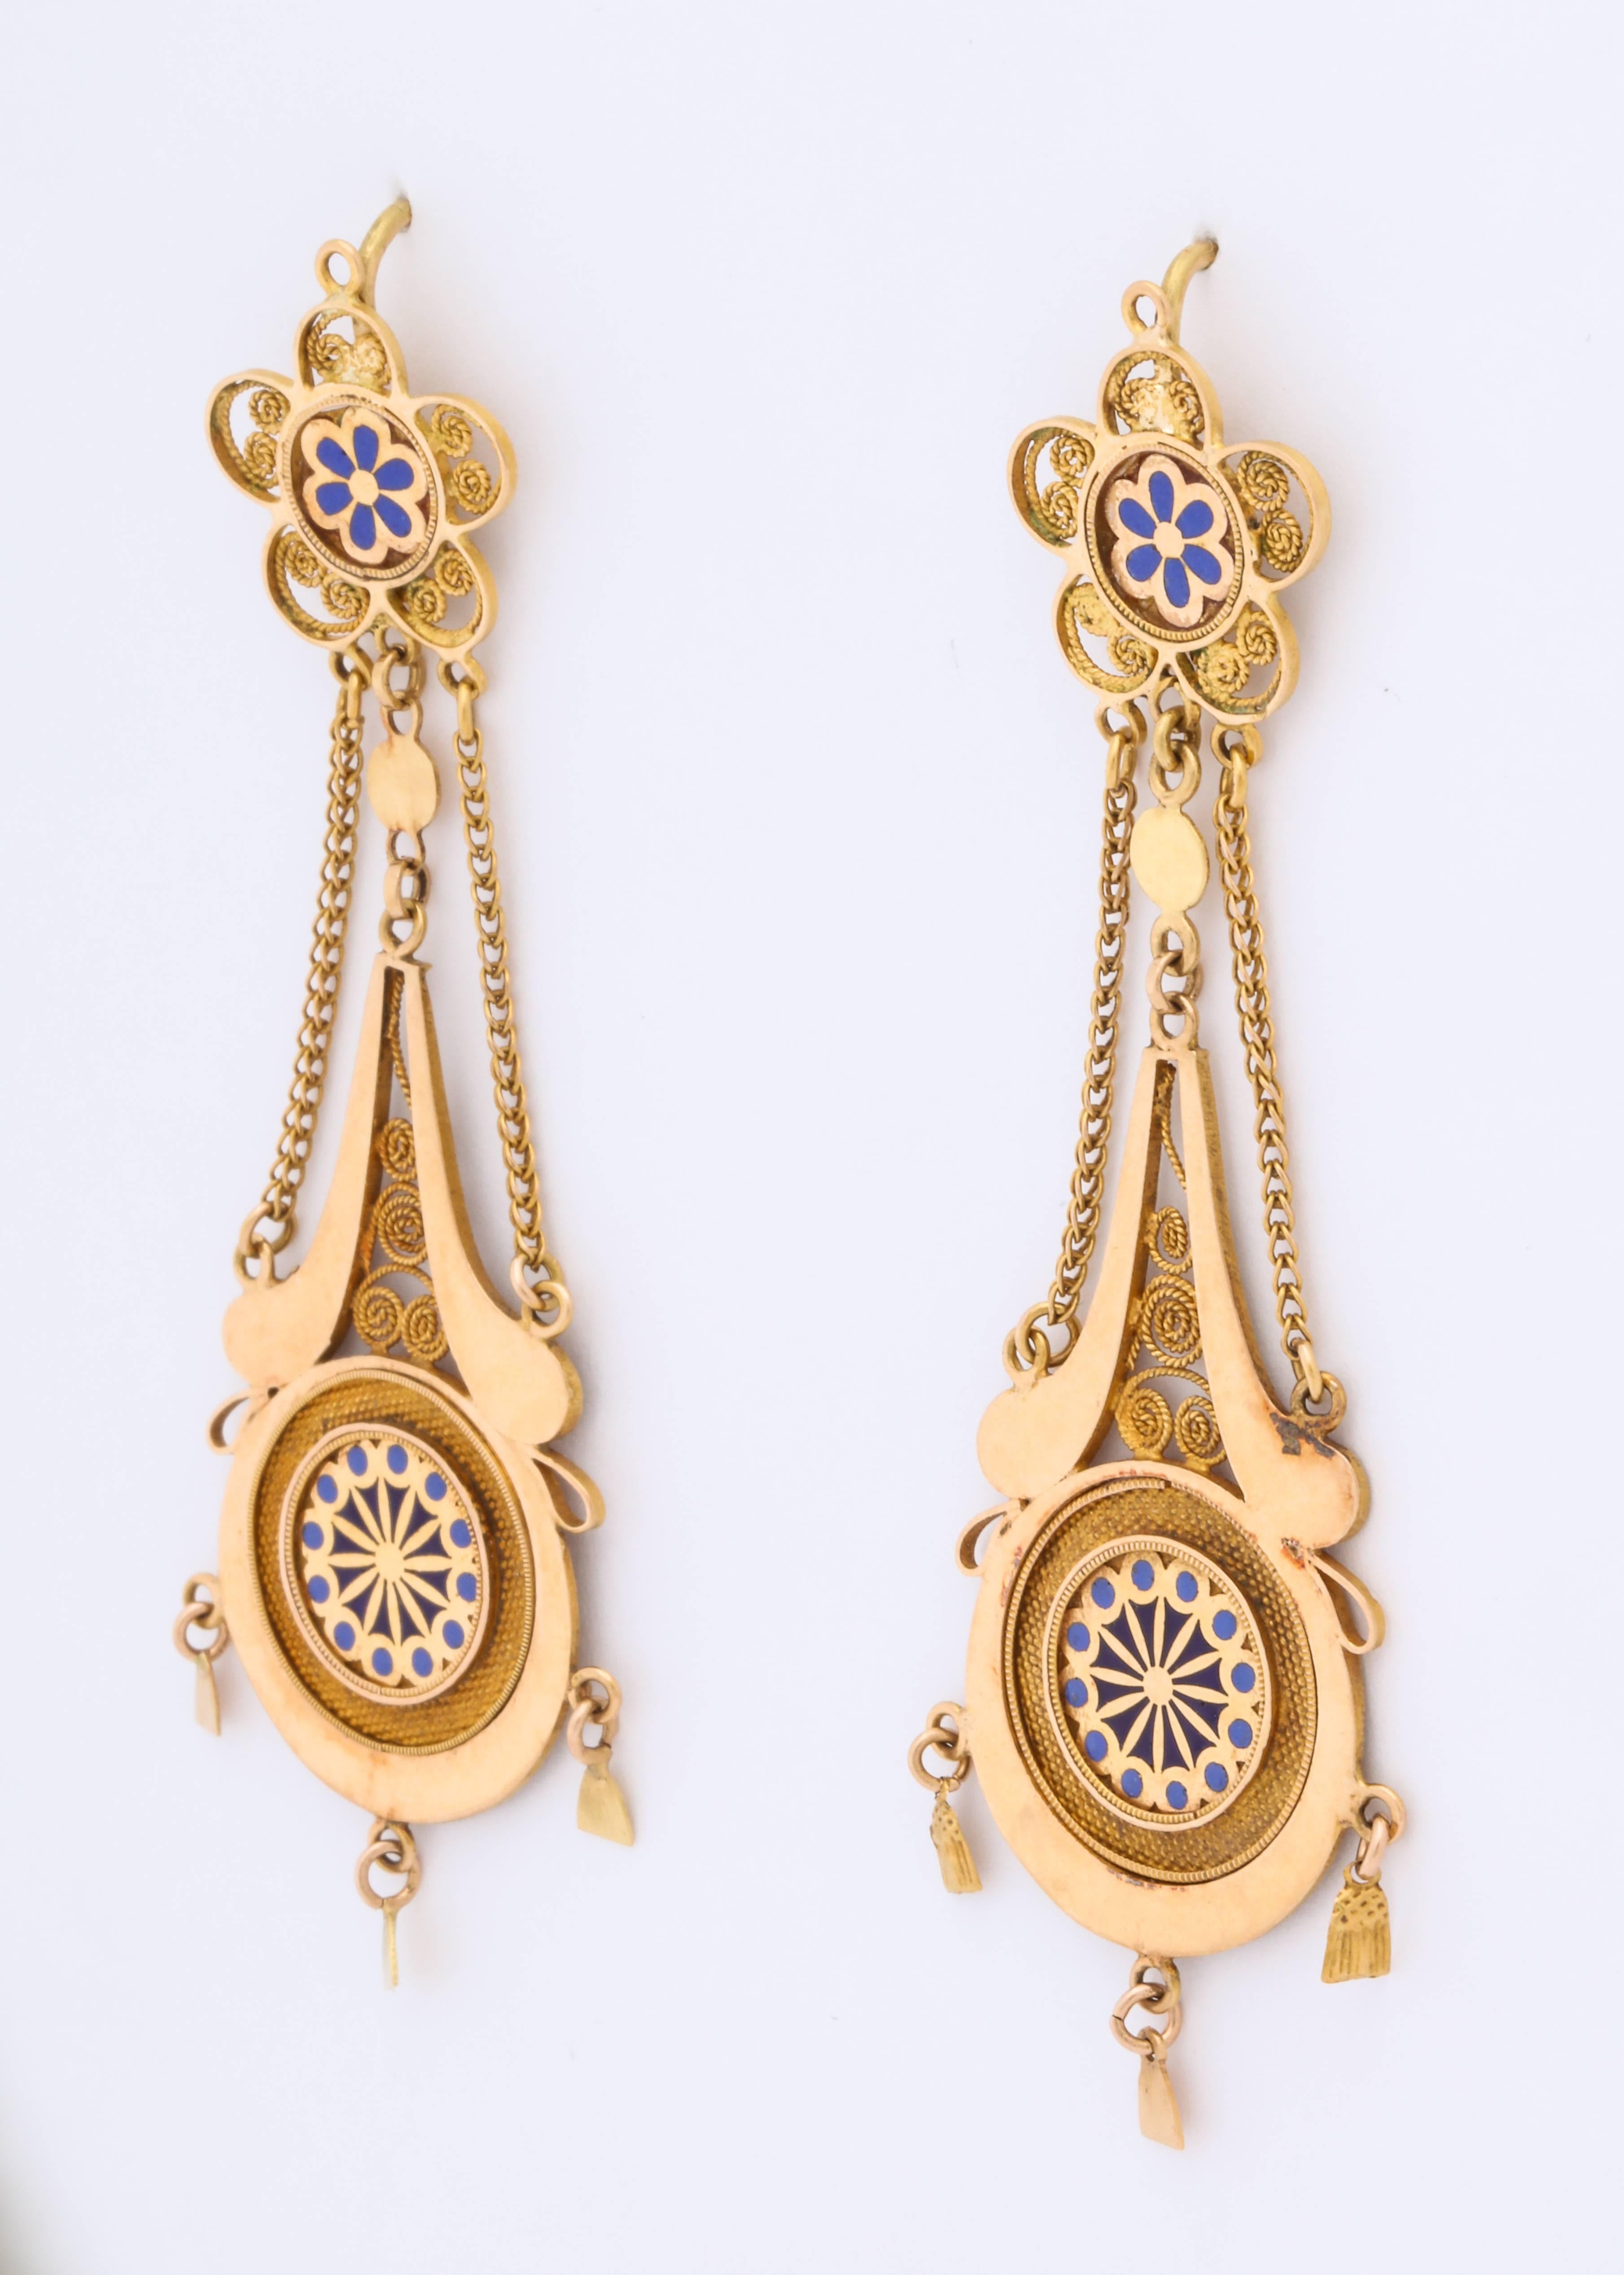 Prächtige französische 18 kt Kronleuchter-Ohrringe um 1800 sind federleicht und von erstaunlicher Verarbeitung mit ihrem Emaille-Gänseblümchen, geometrischem unteren Design, Cannetille-Spiralen und drei kleinen Glöckchen am Boden. Wie bei den als